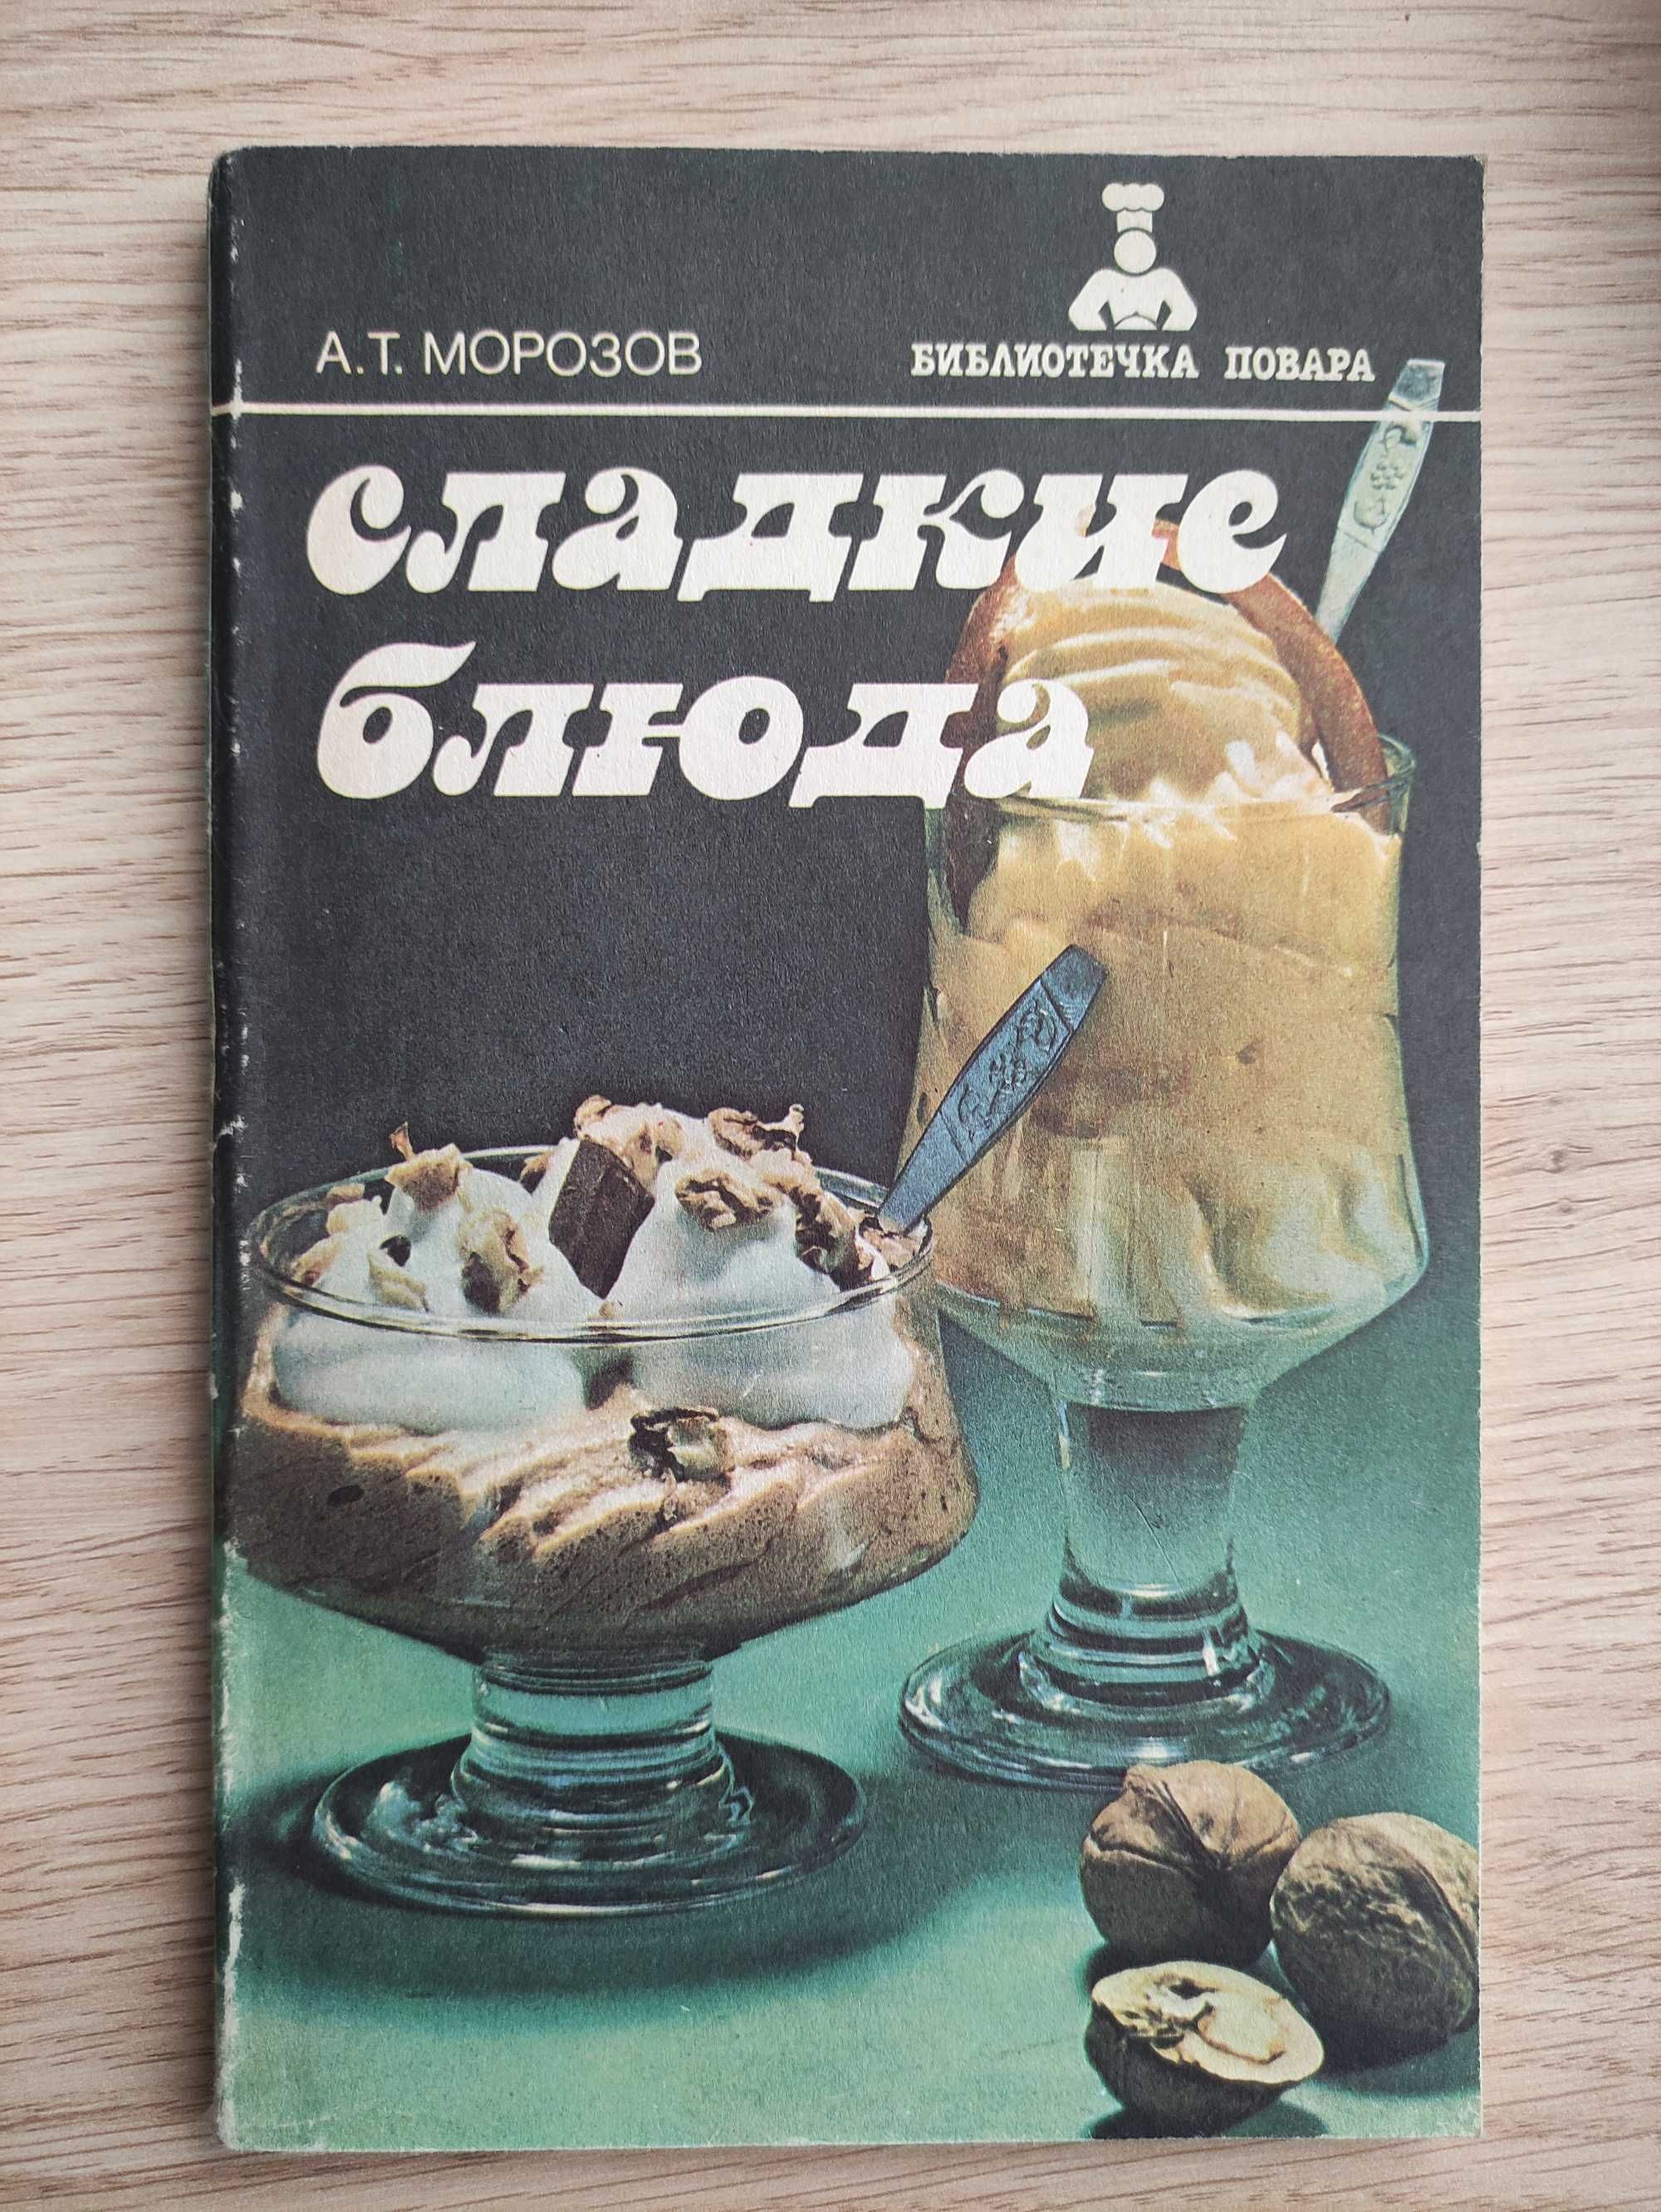 Книга" Сладкие блюда"А.Т.Морозов.